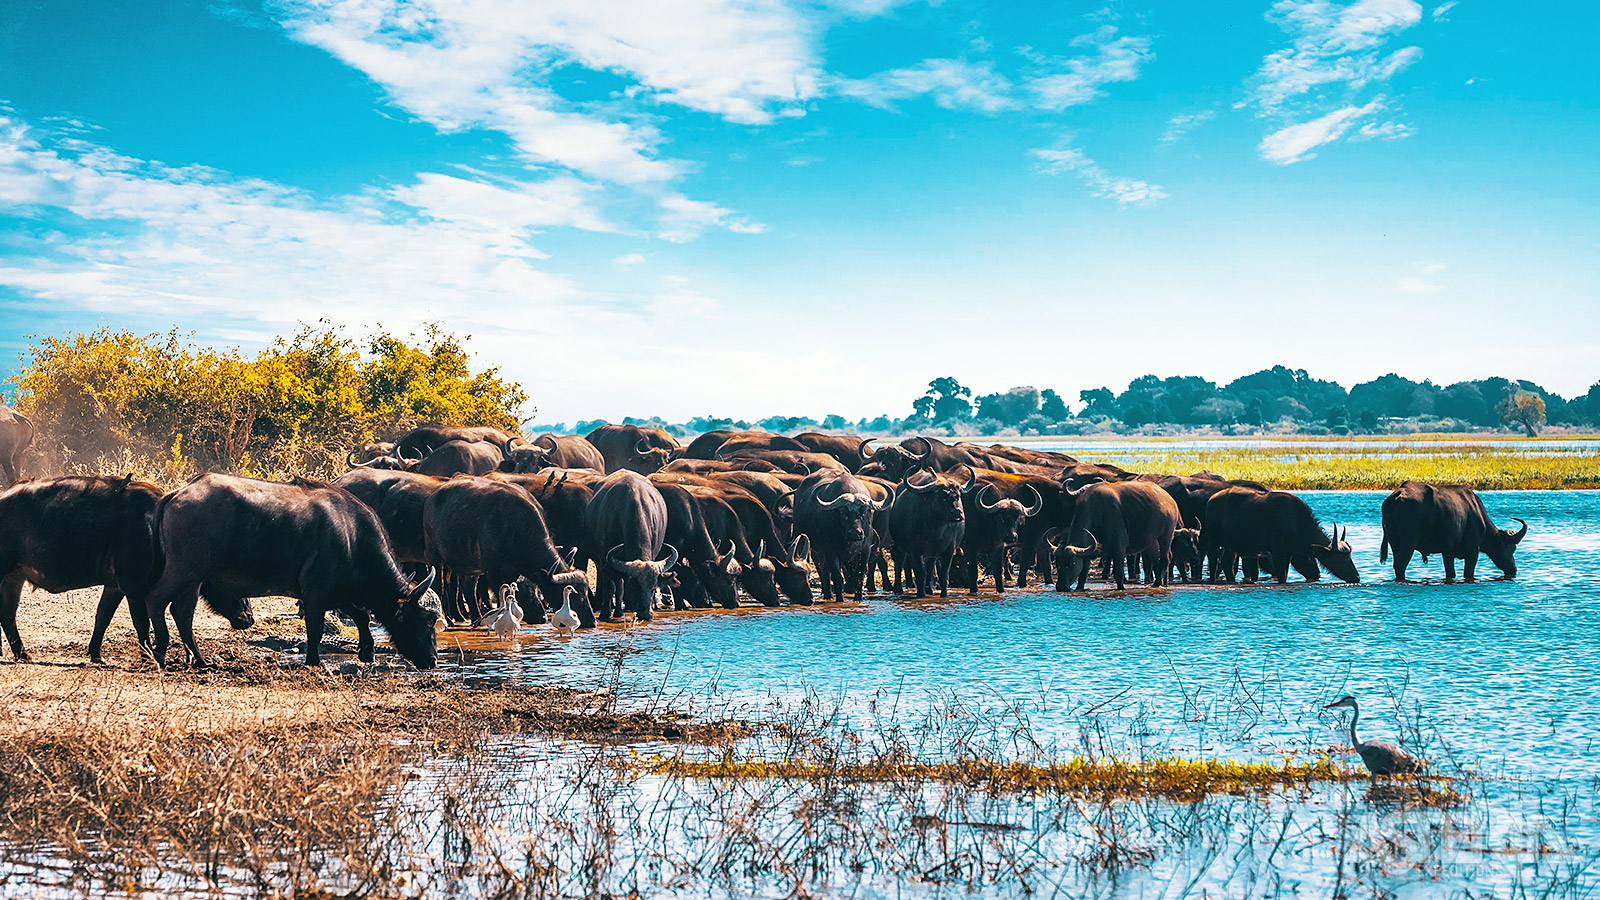 De Chobe rivier heeft een enorme aantrekkingskracht op het wildlife in de weide omgeving